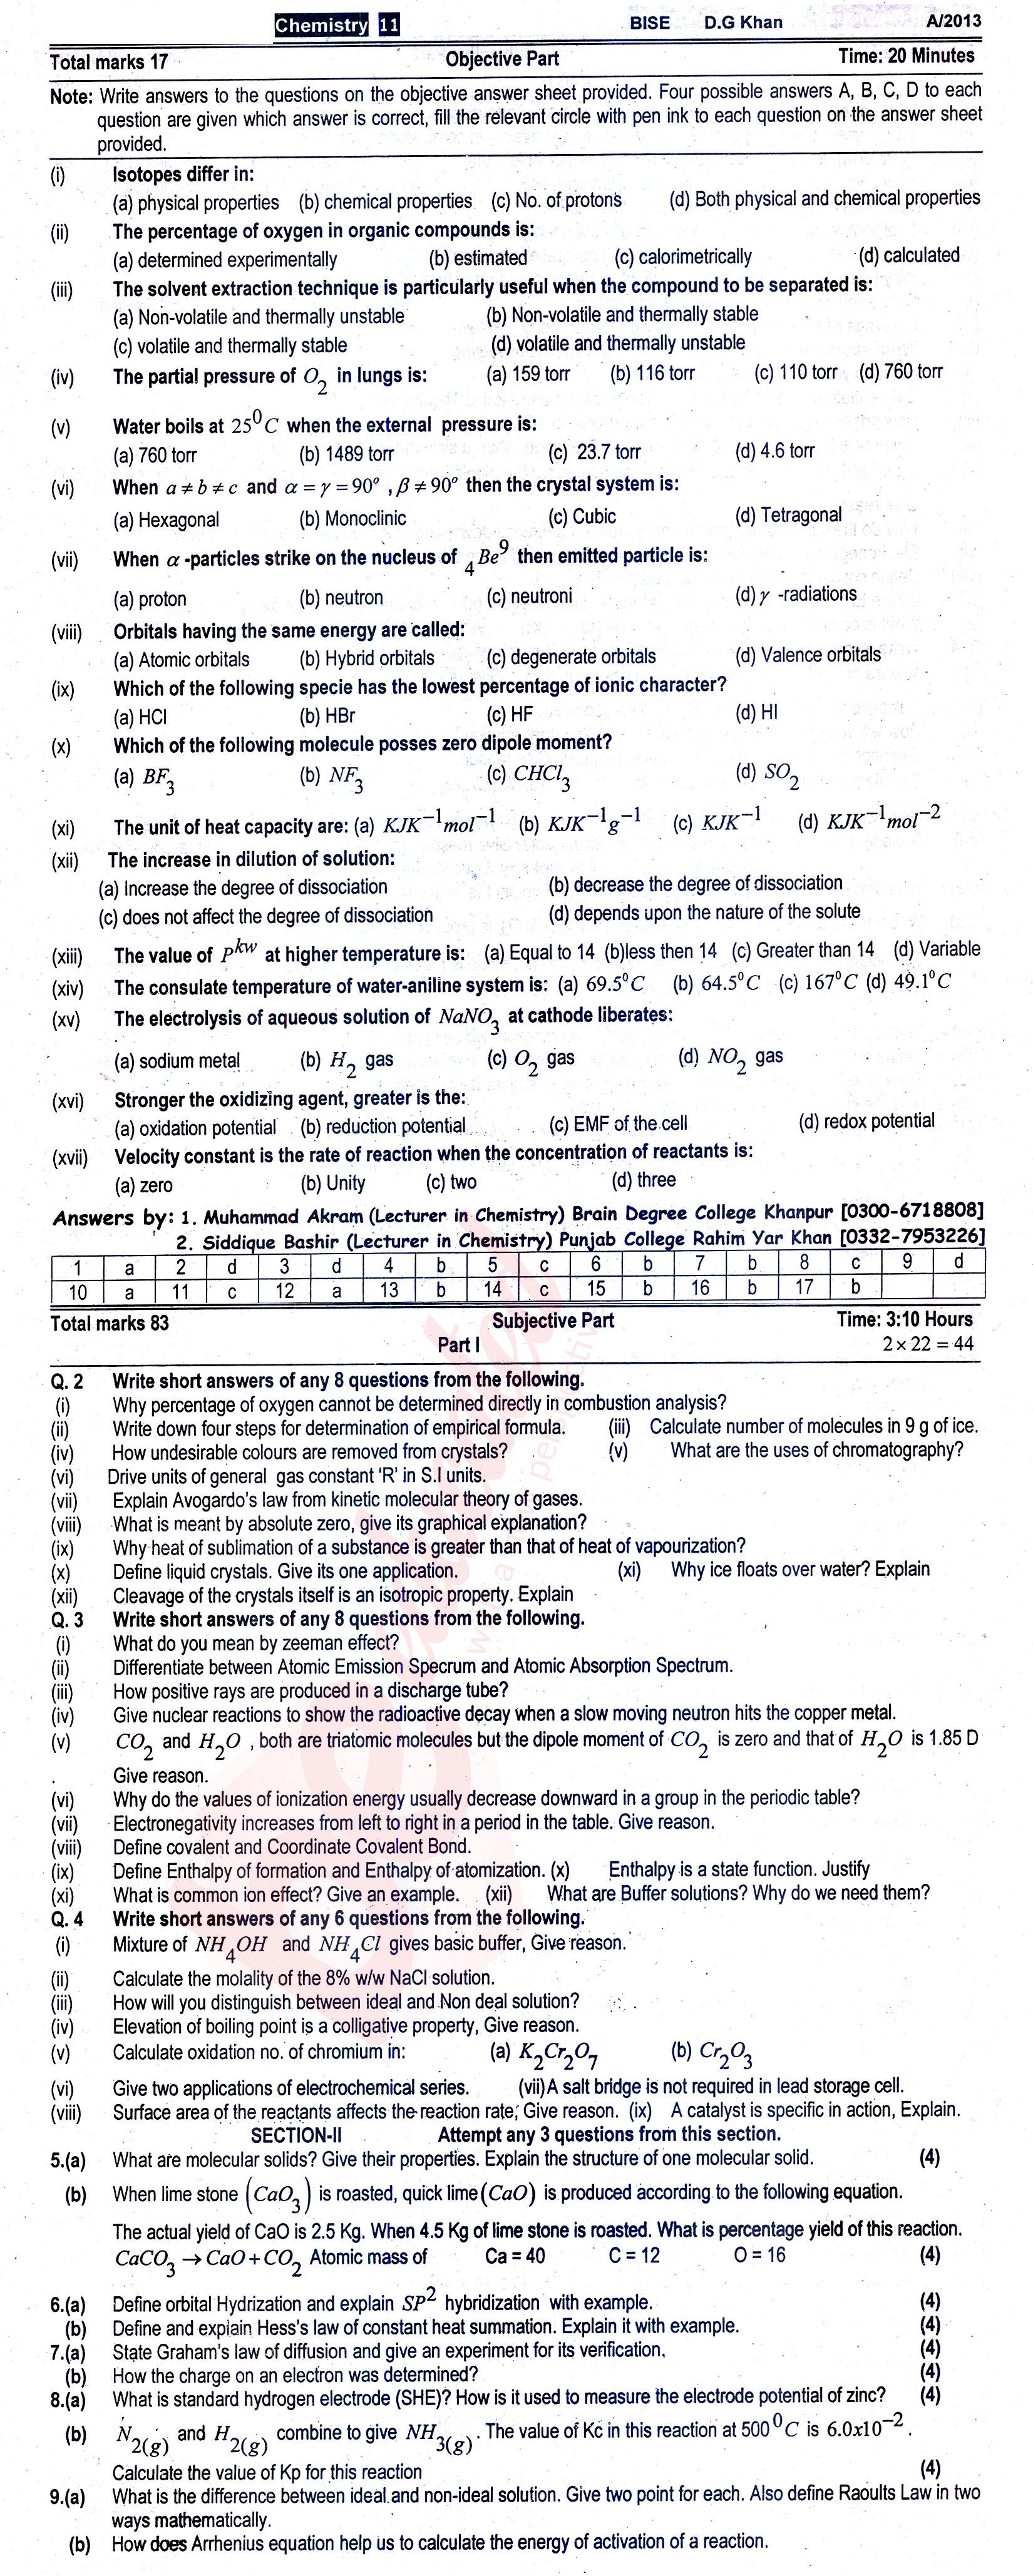 Chemistry FSC Part 1 Past Paper Group 1 BISE DG Khan 2013